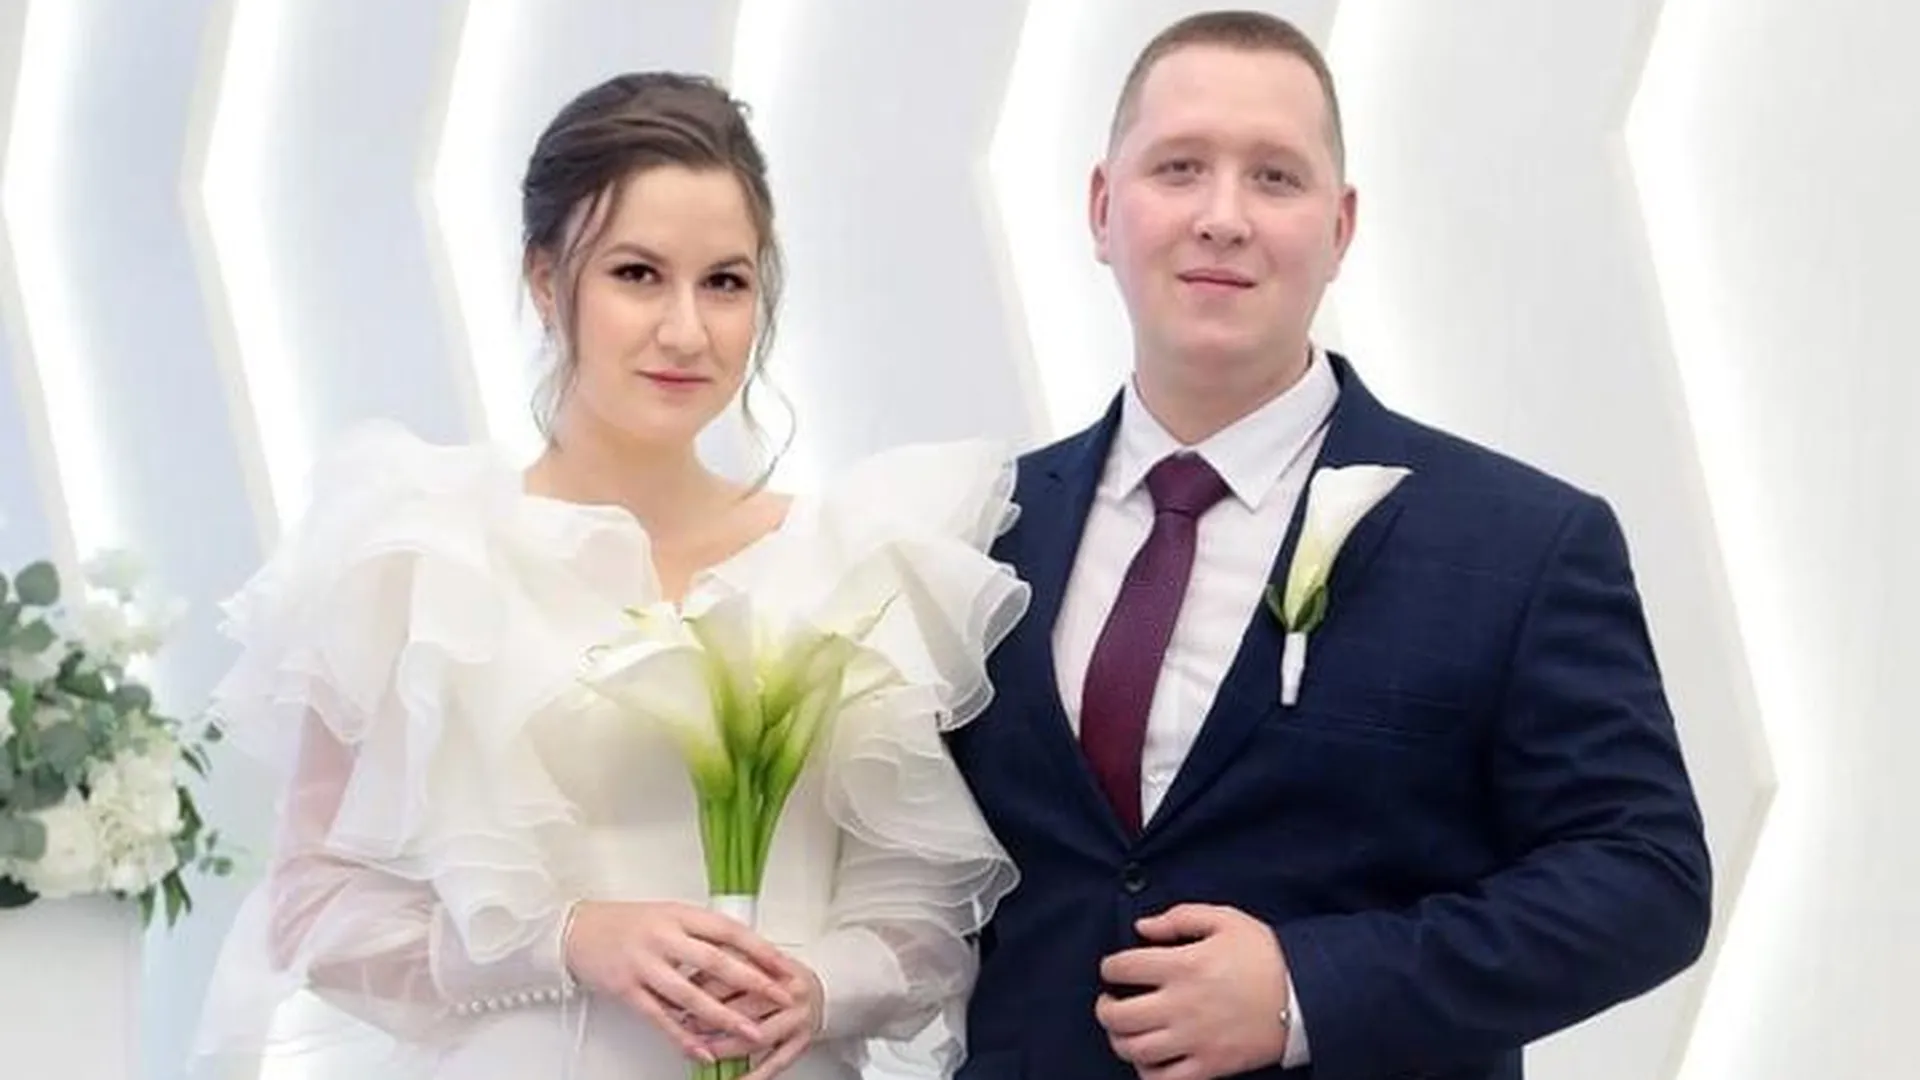 Порядка 35 пар молодоженов зарегистрировали брак в Домодедове в масленичную неделю